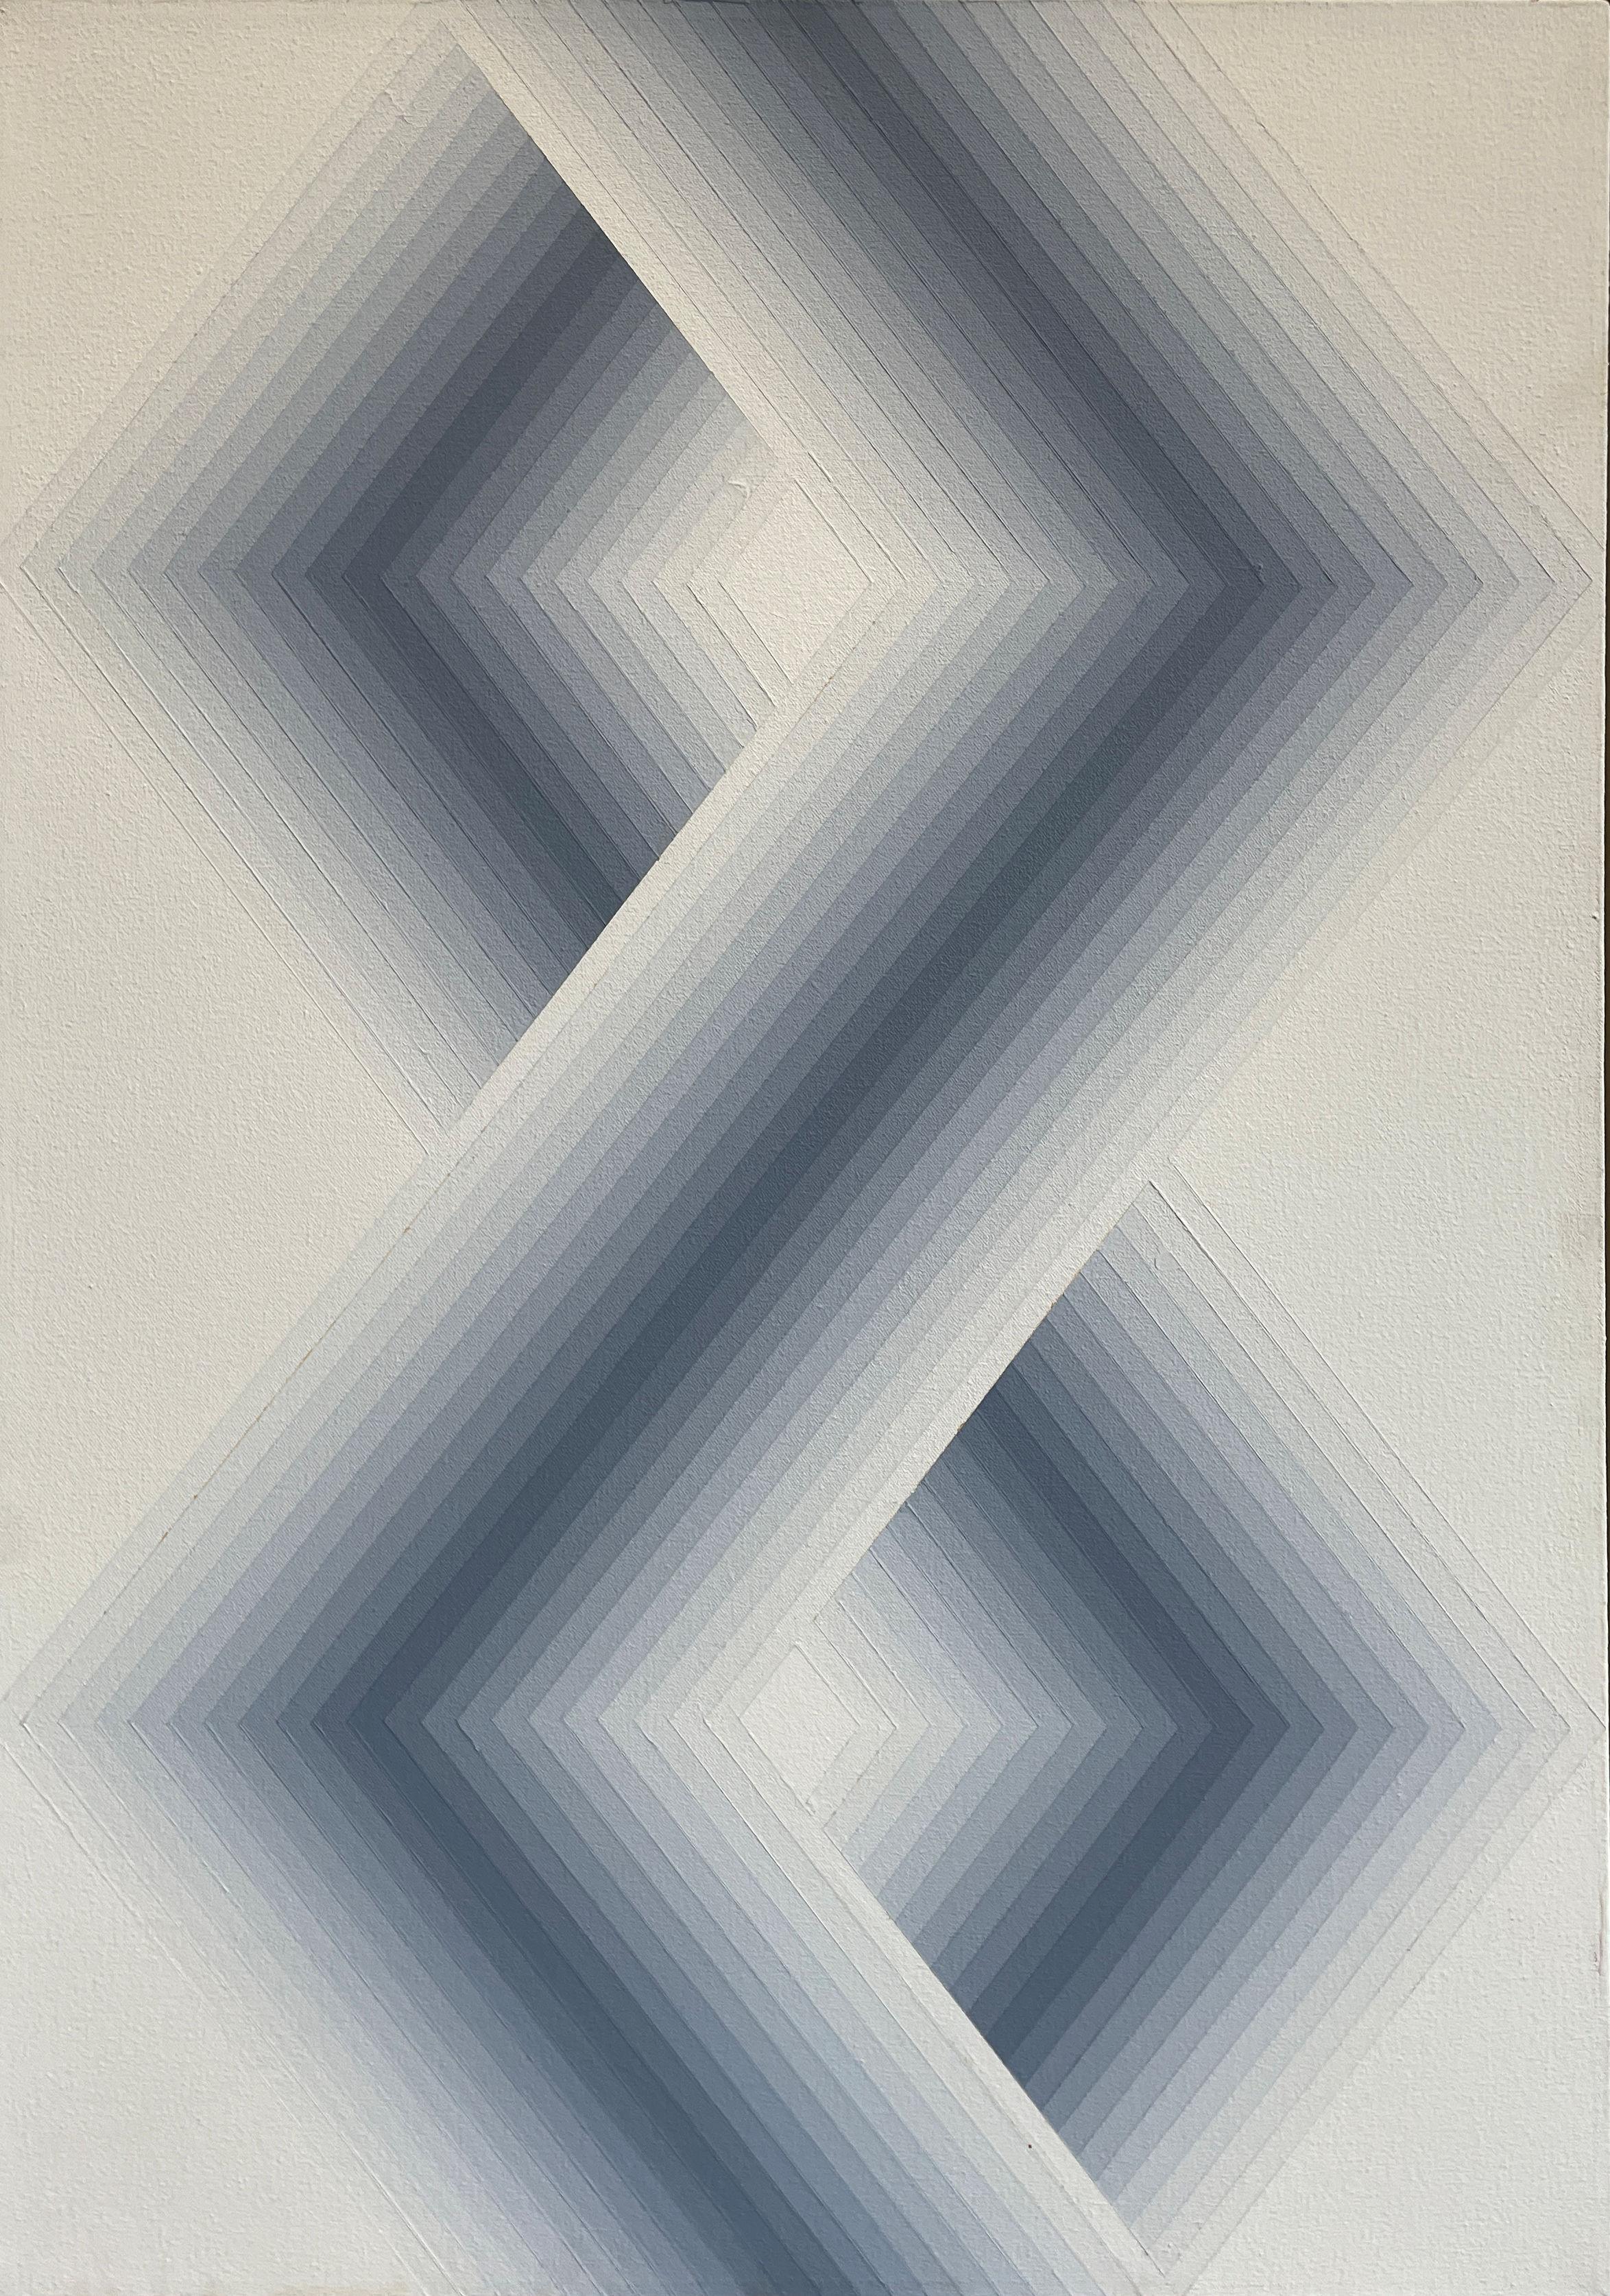 "Zarch, " Babe Shapiro, Art optique, motif hexagonal à rayures d'argent dur